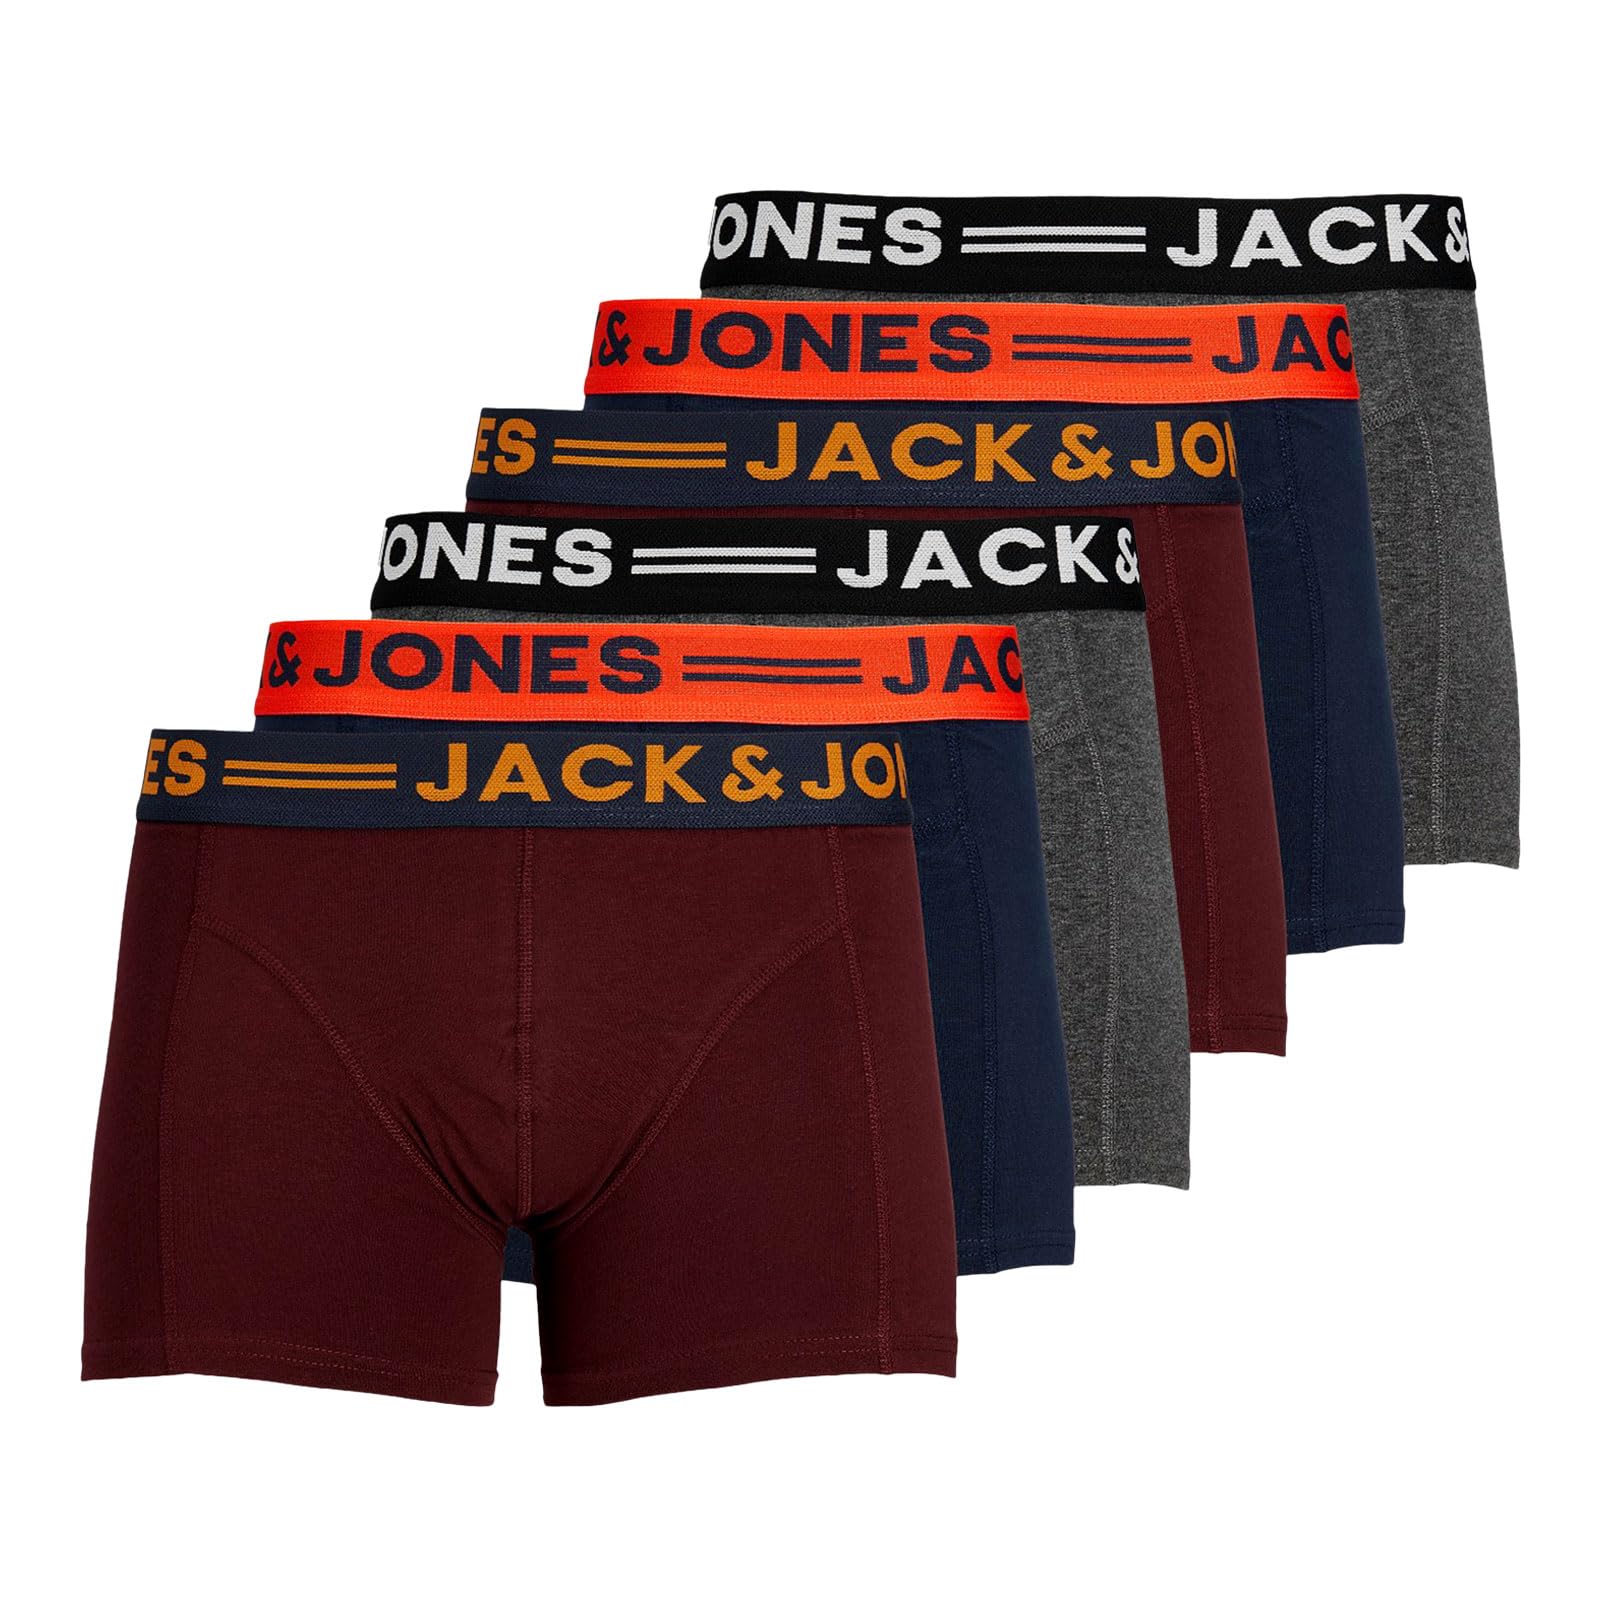 Herren Jack & Jones Set 3er Pack JACLICHFIELD Trunks Boxershorts Stretch Unterhose Basic Unterwäsche, Farben:Bordeaux, Größe:XL